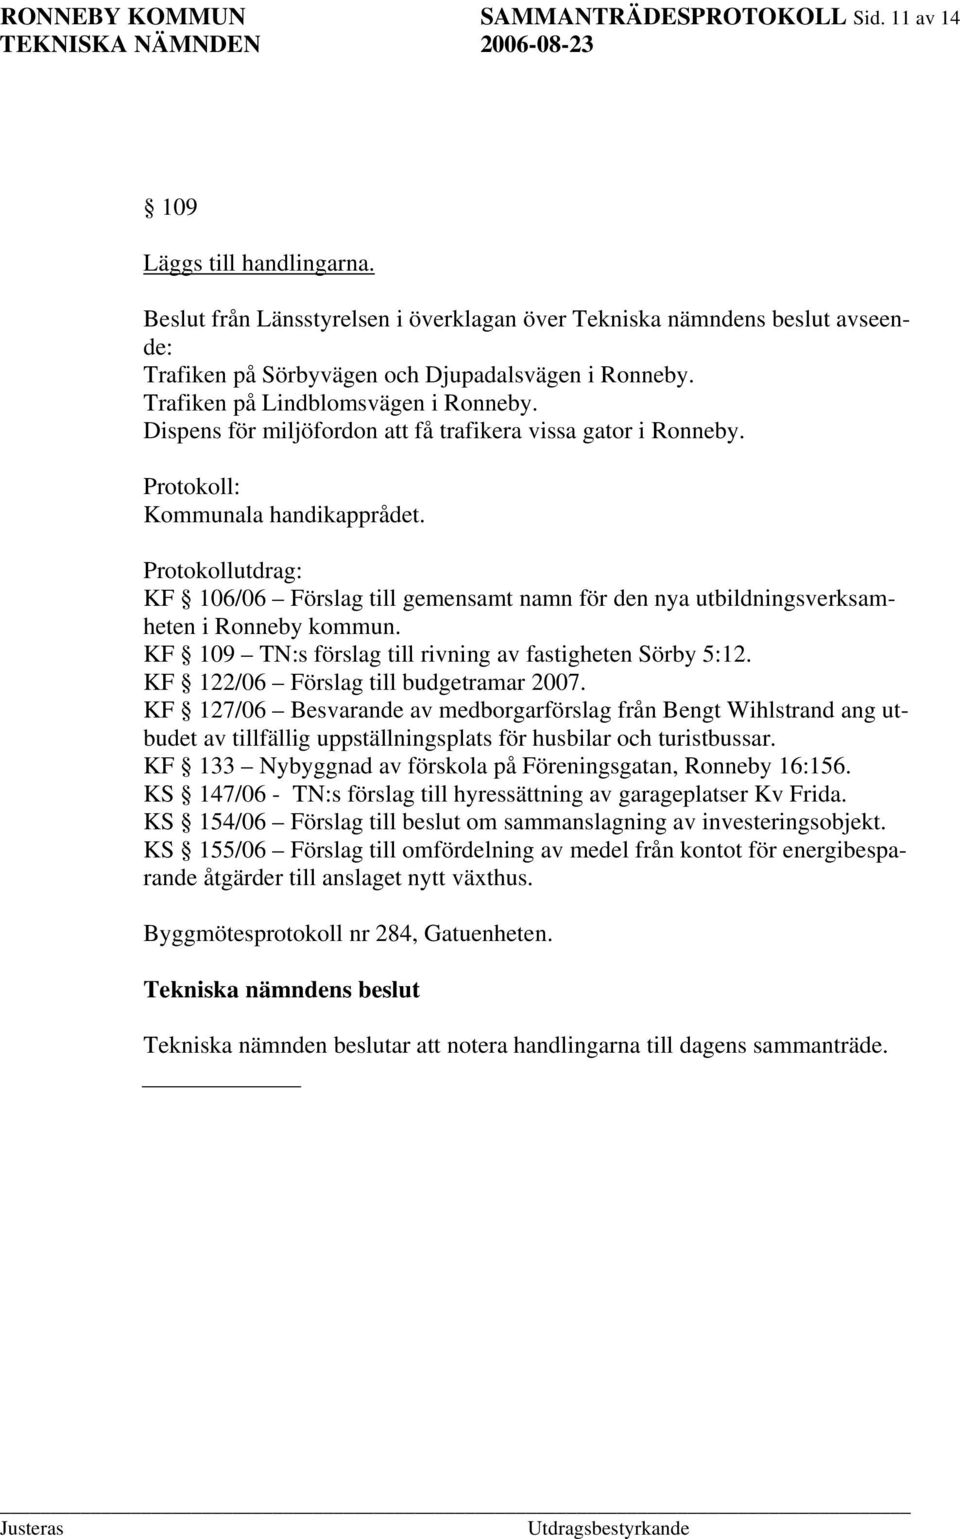 Protokollutdrag: KF 106/06 Förslag till gemensamt namn för den nya utbildningsverksamheten i Ronneby kommun. KF 109 TN:s förslag till rivning av fastigheten Sörby 5:12.